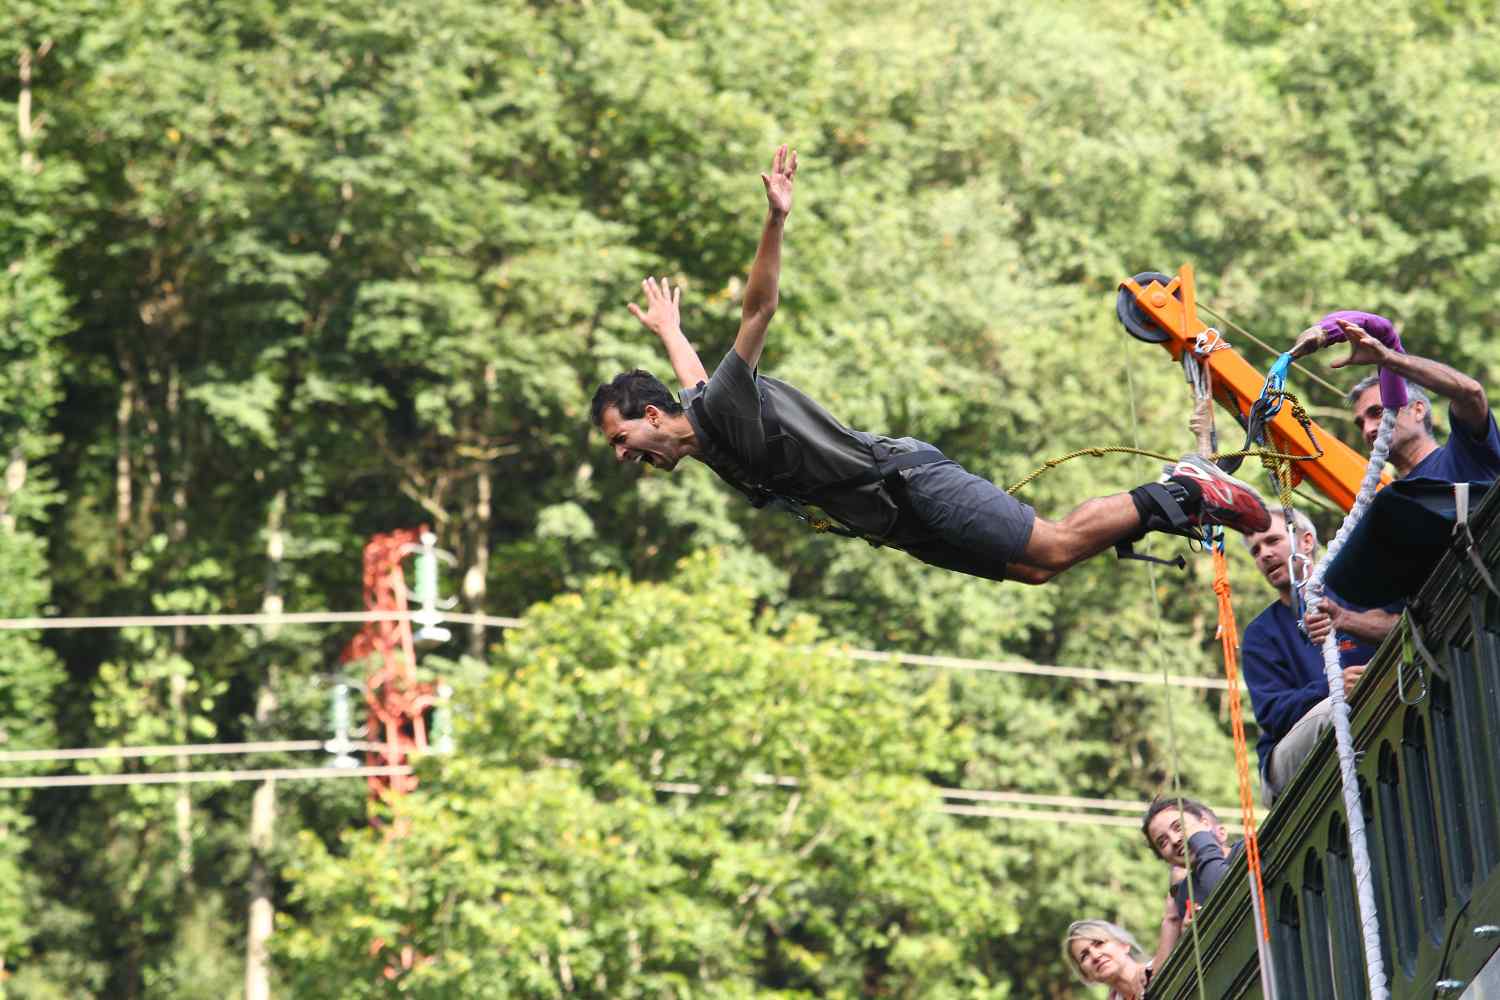 Conheça a curiosa origem do bungee jumping, um esporte radical em contato com a natureza que atrai pessoas do mundo todo